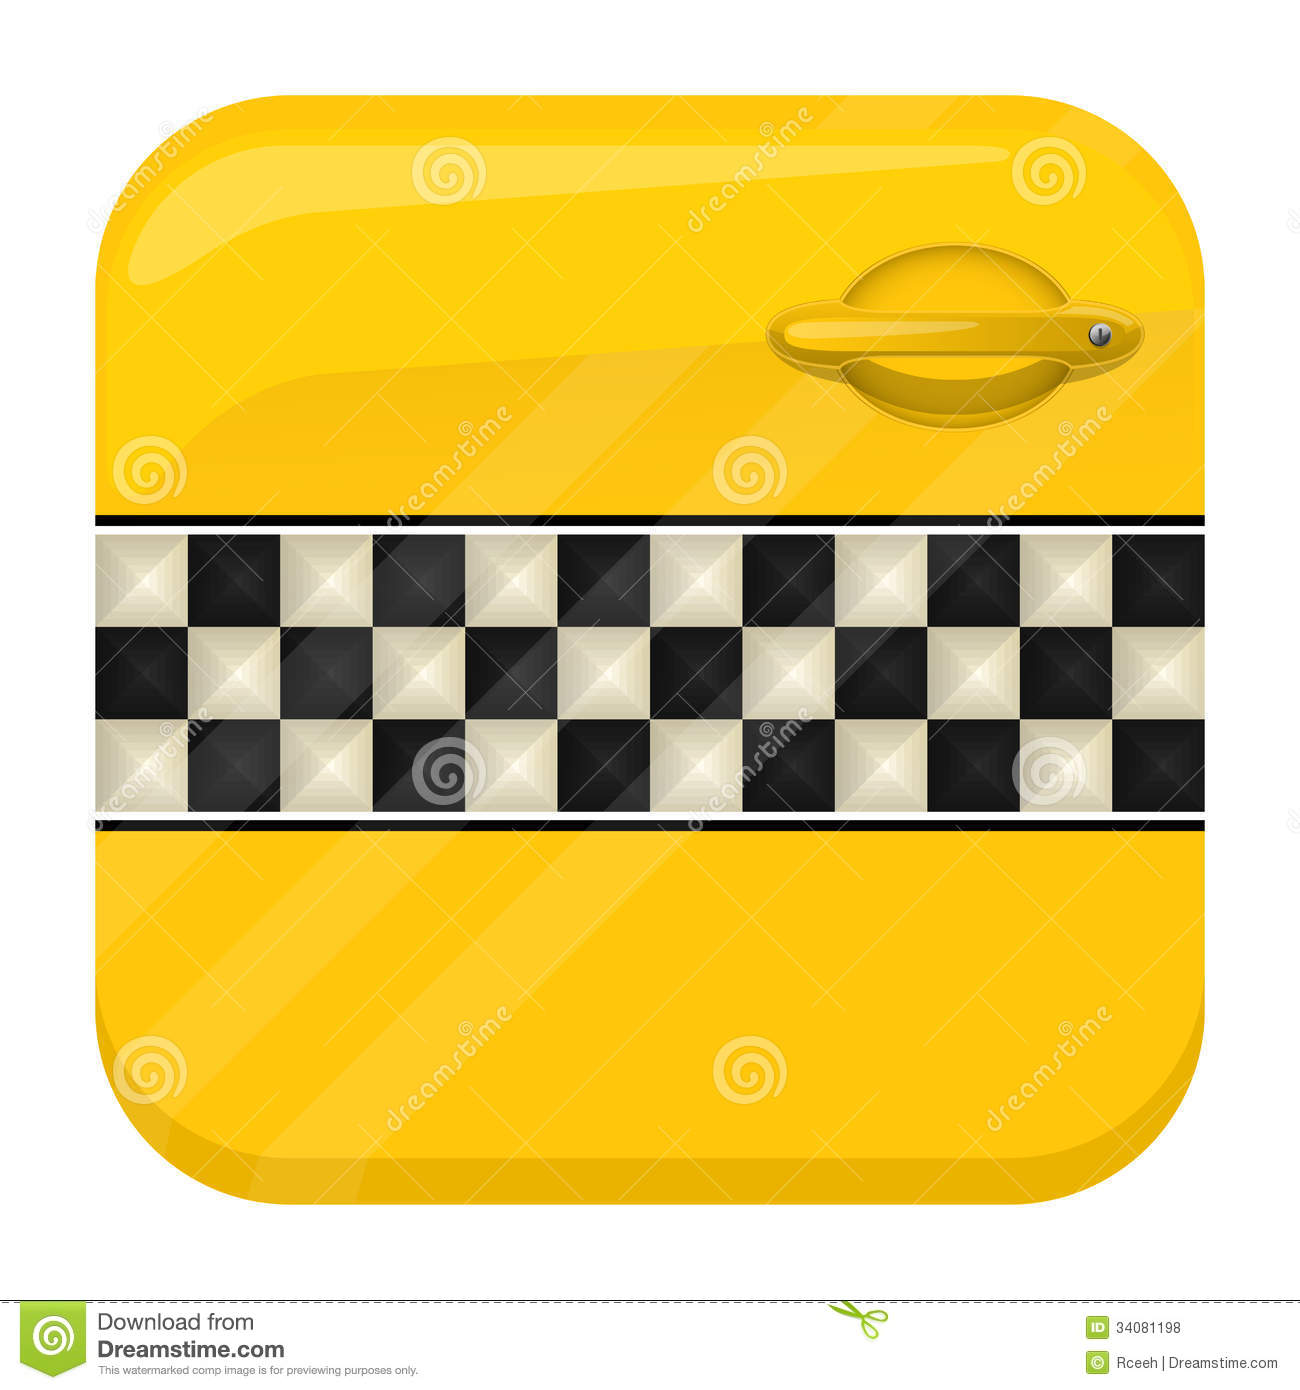 Taxi App Icon